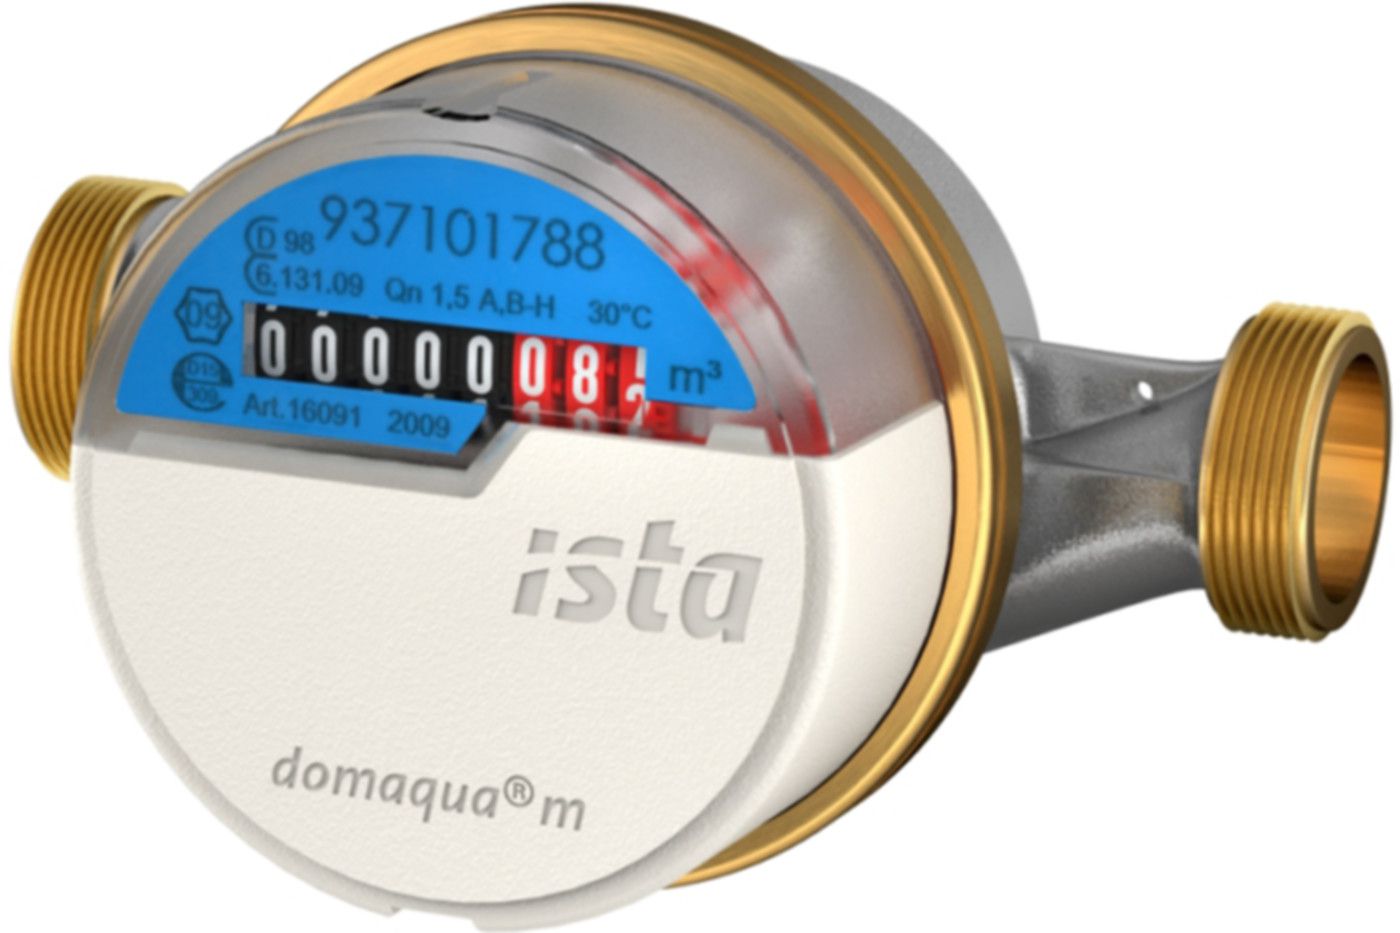 Aufputzzähler Domaqua m DN 20 3/4" G 1" - 130 mm warm 2.5 m3/h  16097 - ISTA - Wärme- / Wasserzähler